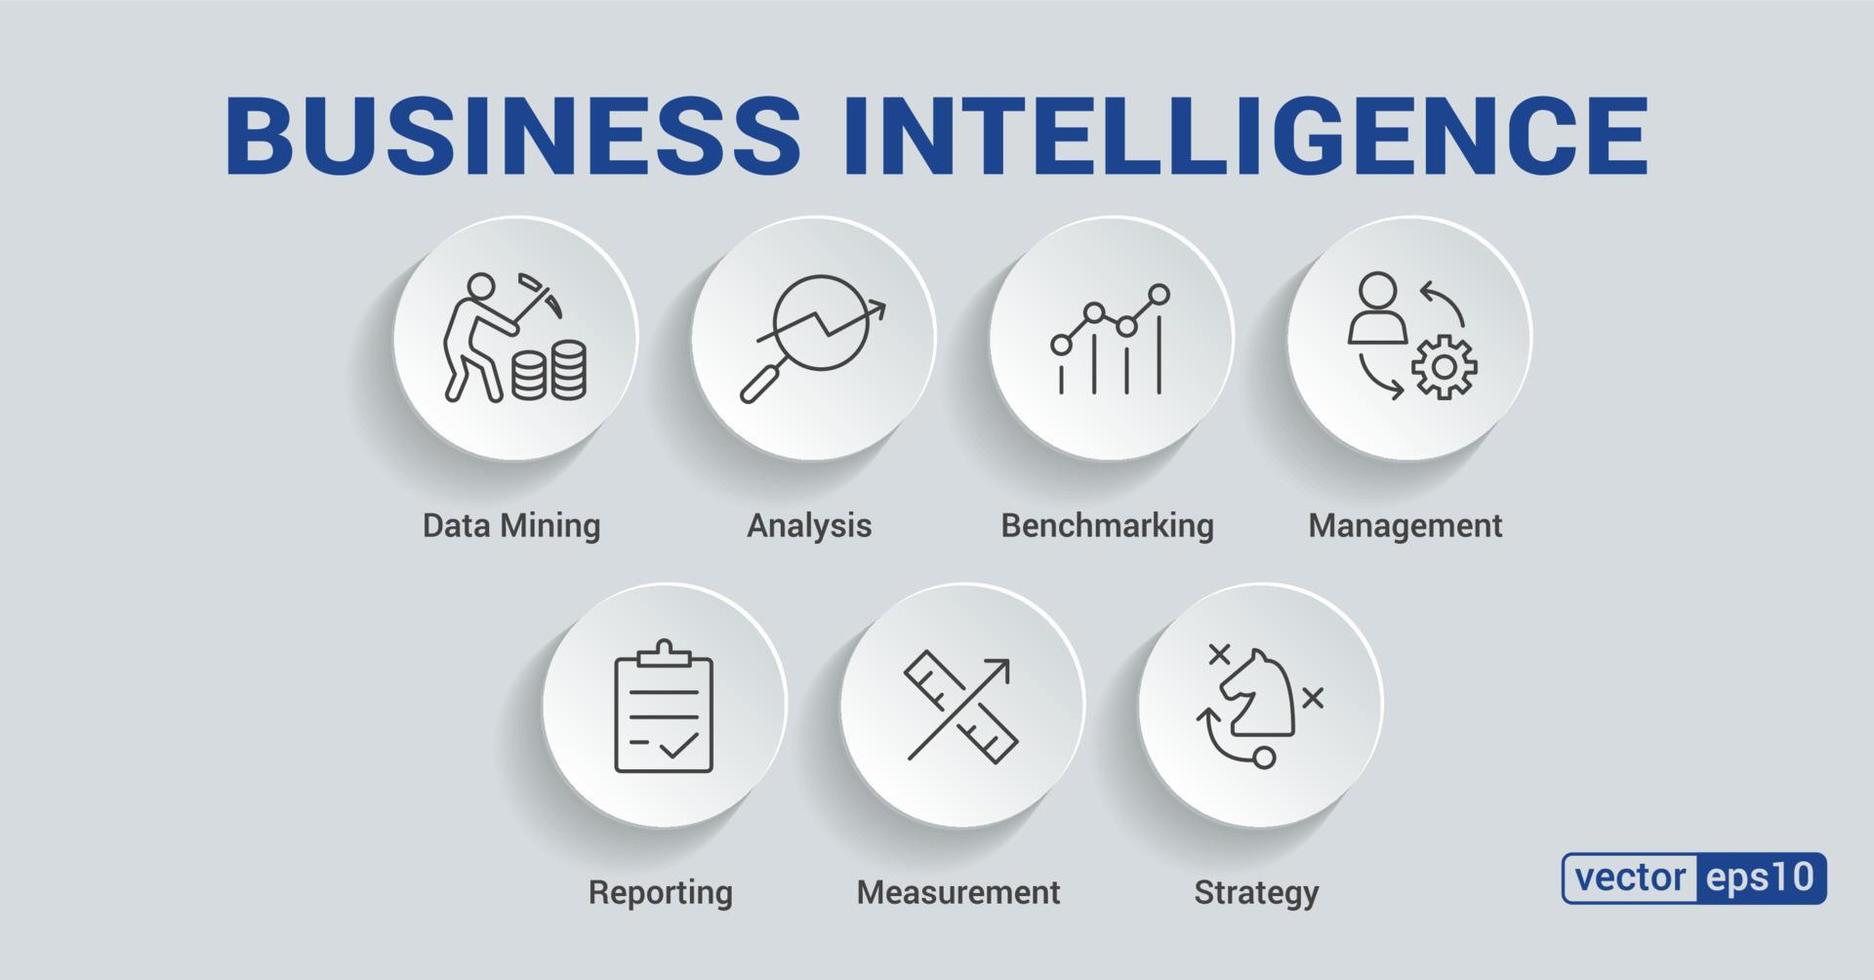 ícone da web de banner de inteligência de negócios para plano de negócios, mineração de dados, análise, estratégia, medição, benchmarking, relatório e gerenciamento. infográfico de vetor mínimo. eps 10.